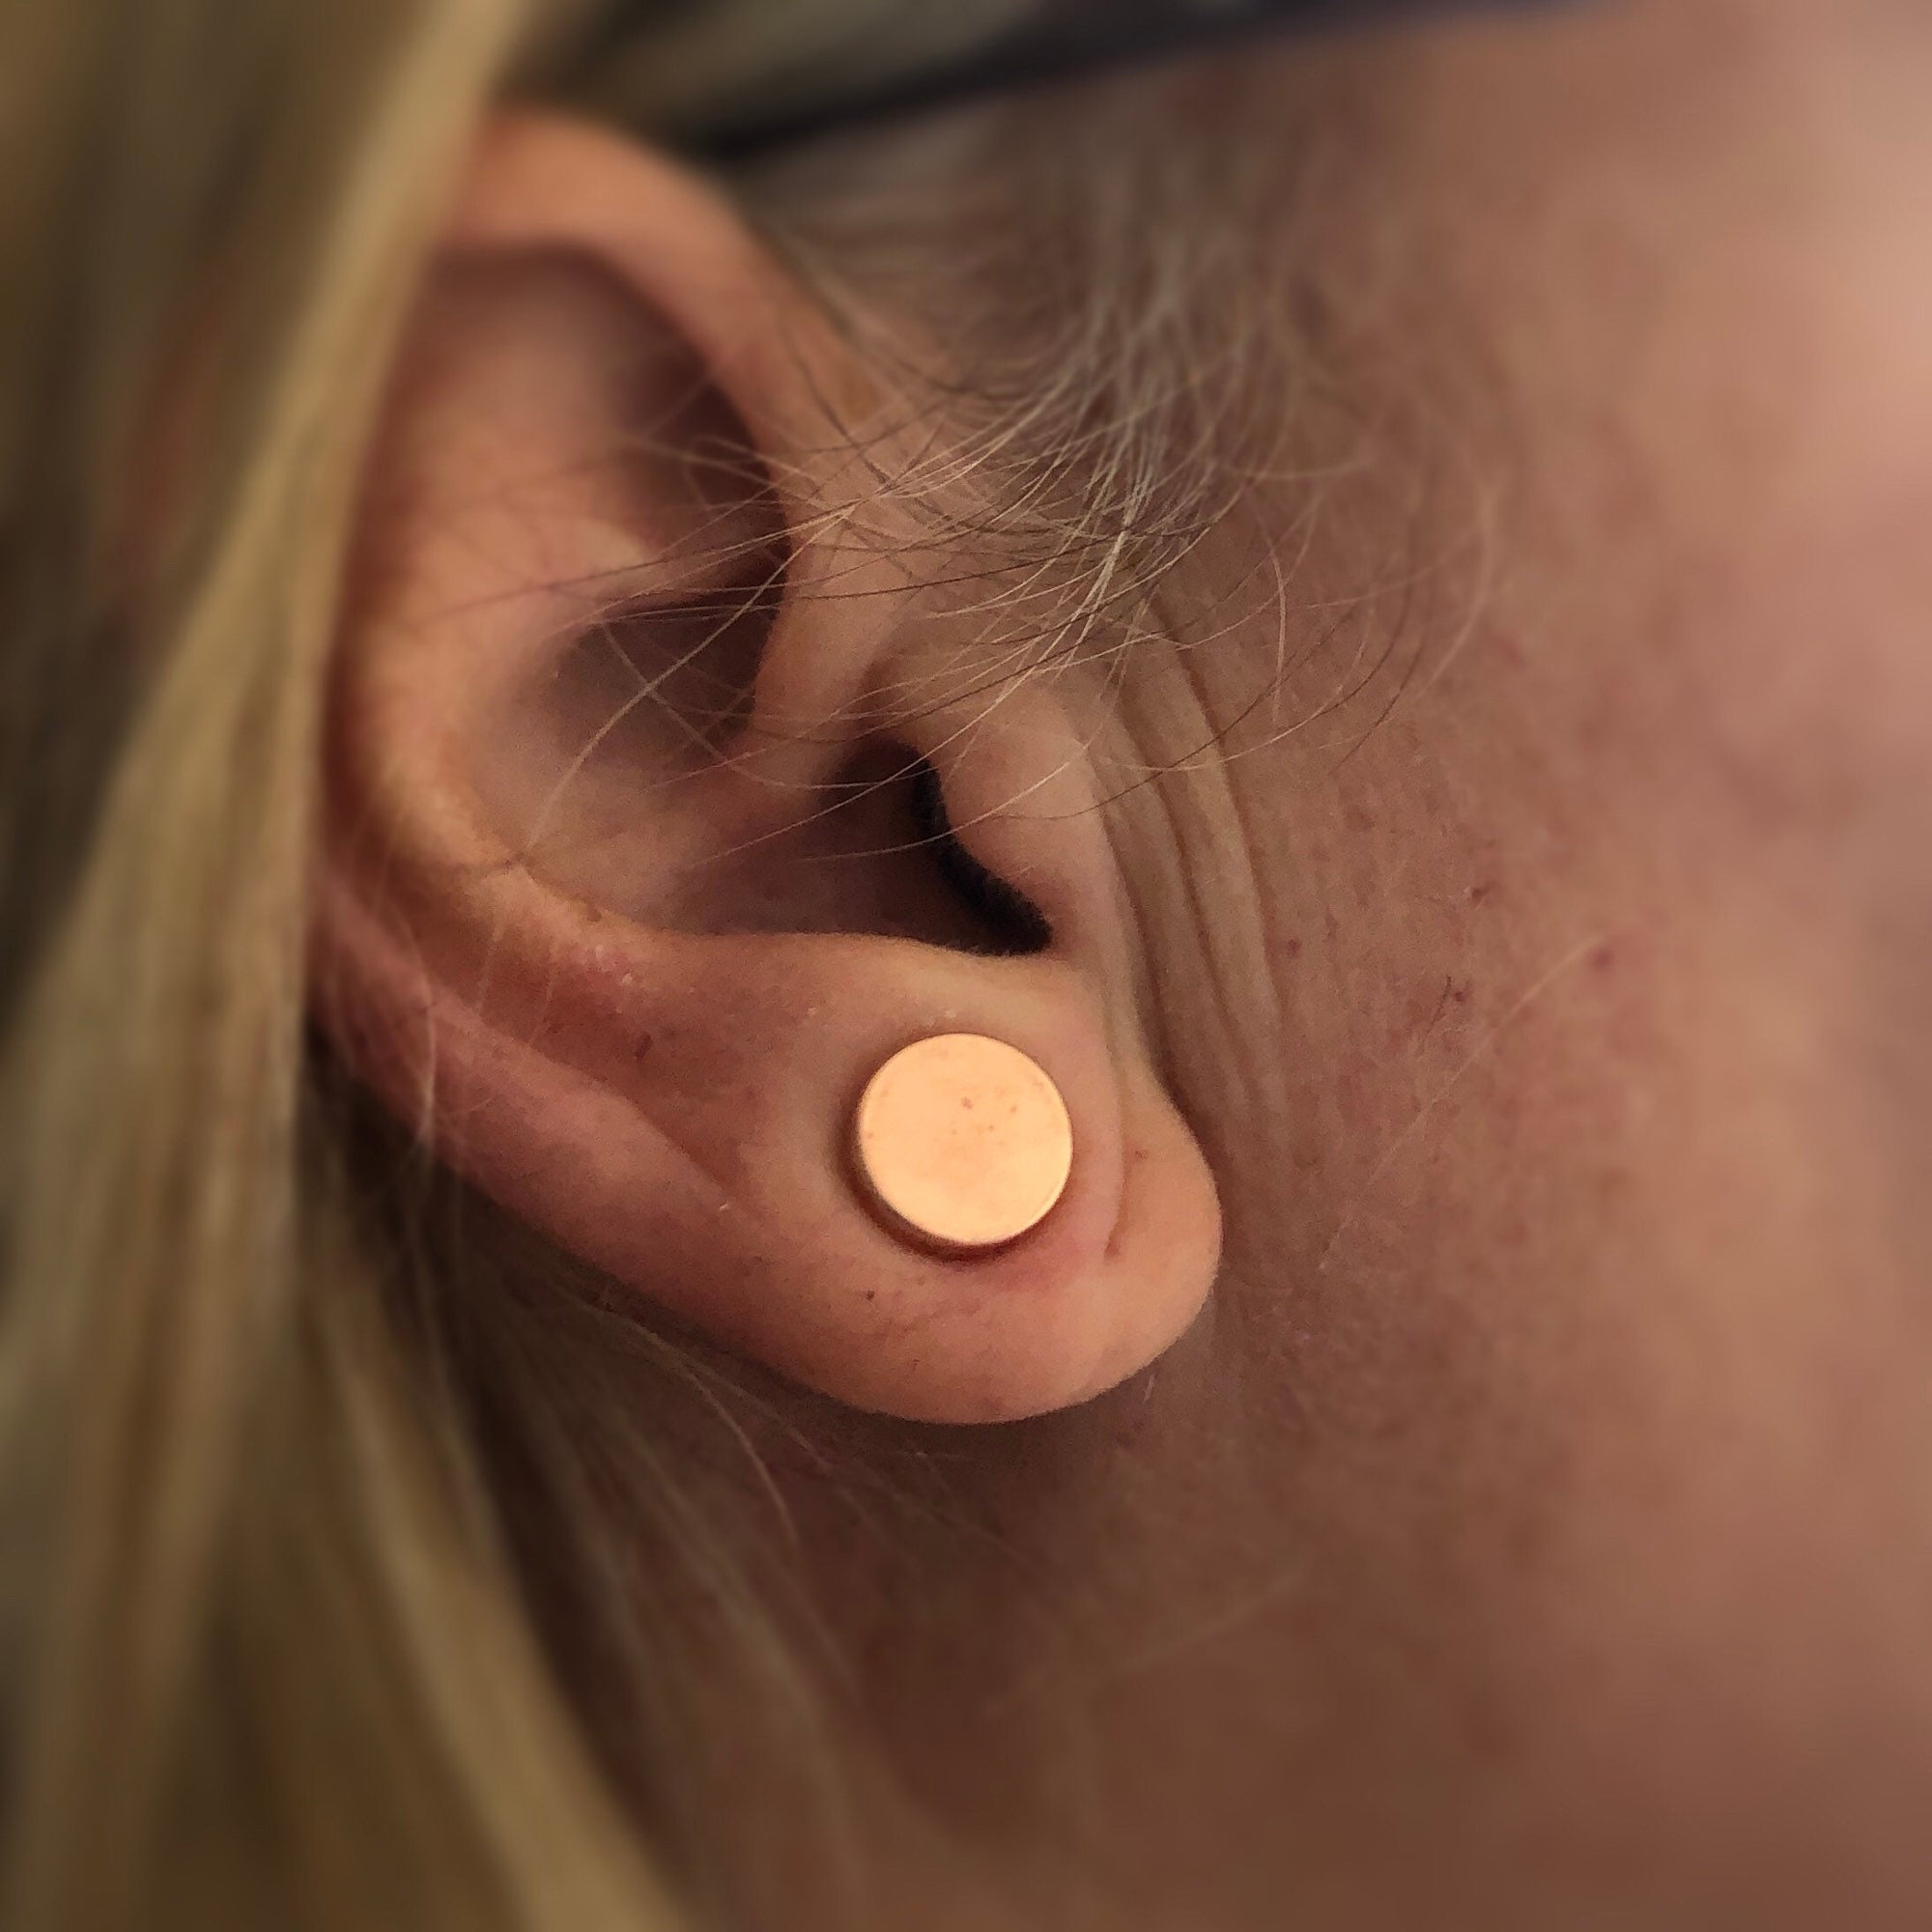 Black keloid pressure earrings • Magnetic earrings clip on ear rings • Cheloid compression earring • Post Op treatment keloid scars • Magnet